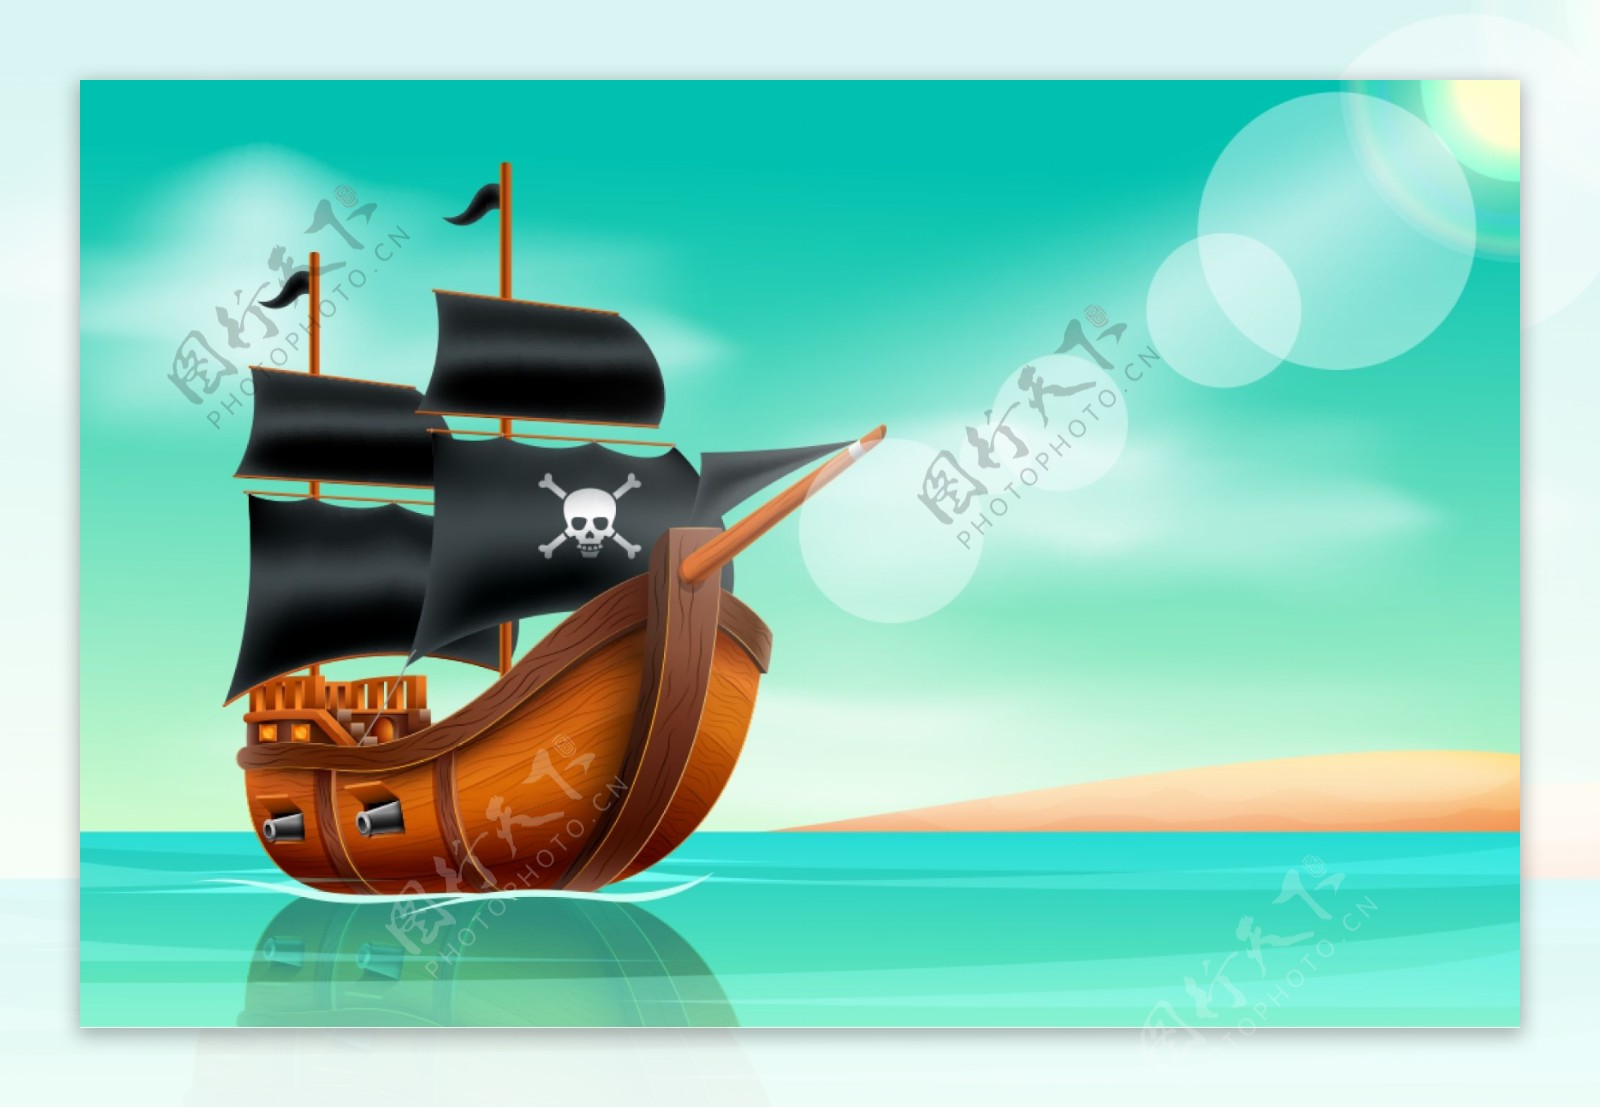 加勒比海盗之海盗主舰修复级 由 土顽毛 创作 | 乐艺leewiART CG精英艺术社区，汇聚优秀CG艺术作品